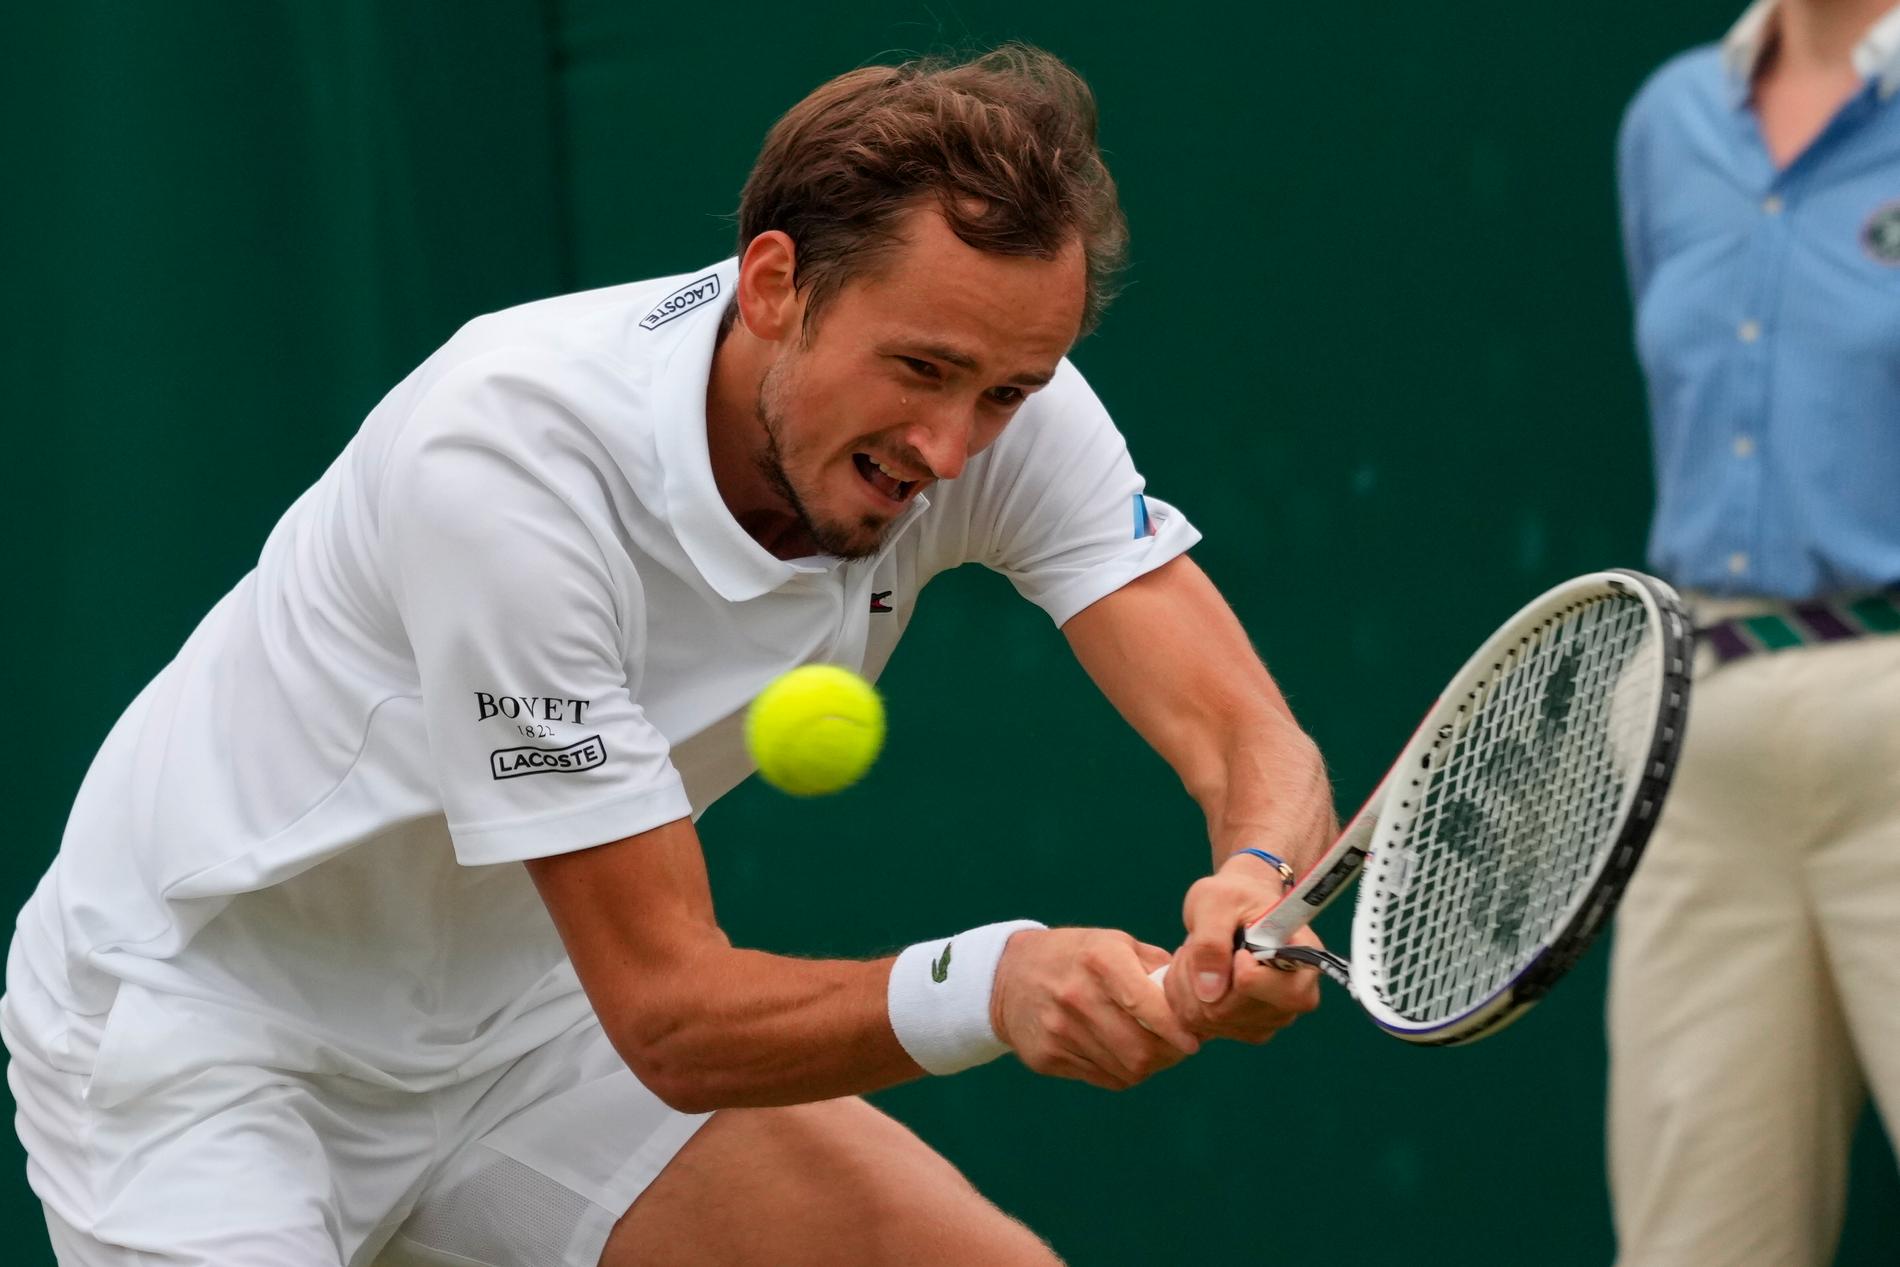 Ryske världstvåan Daniil Medvedev är en av spelarna som inte är välkommen till årets upplaga av Wimbledon. Arkivbild.